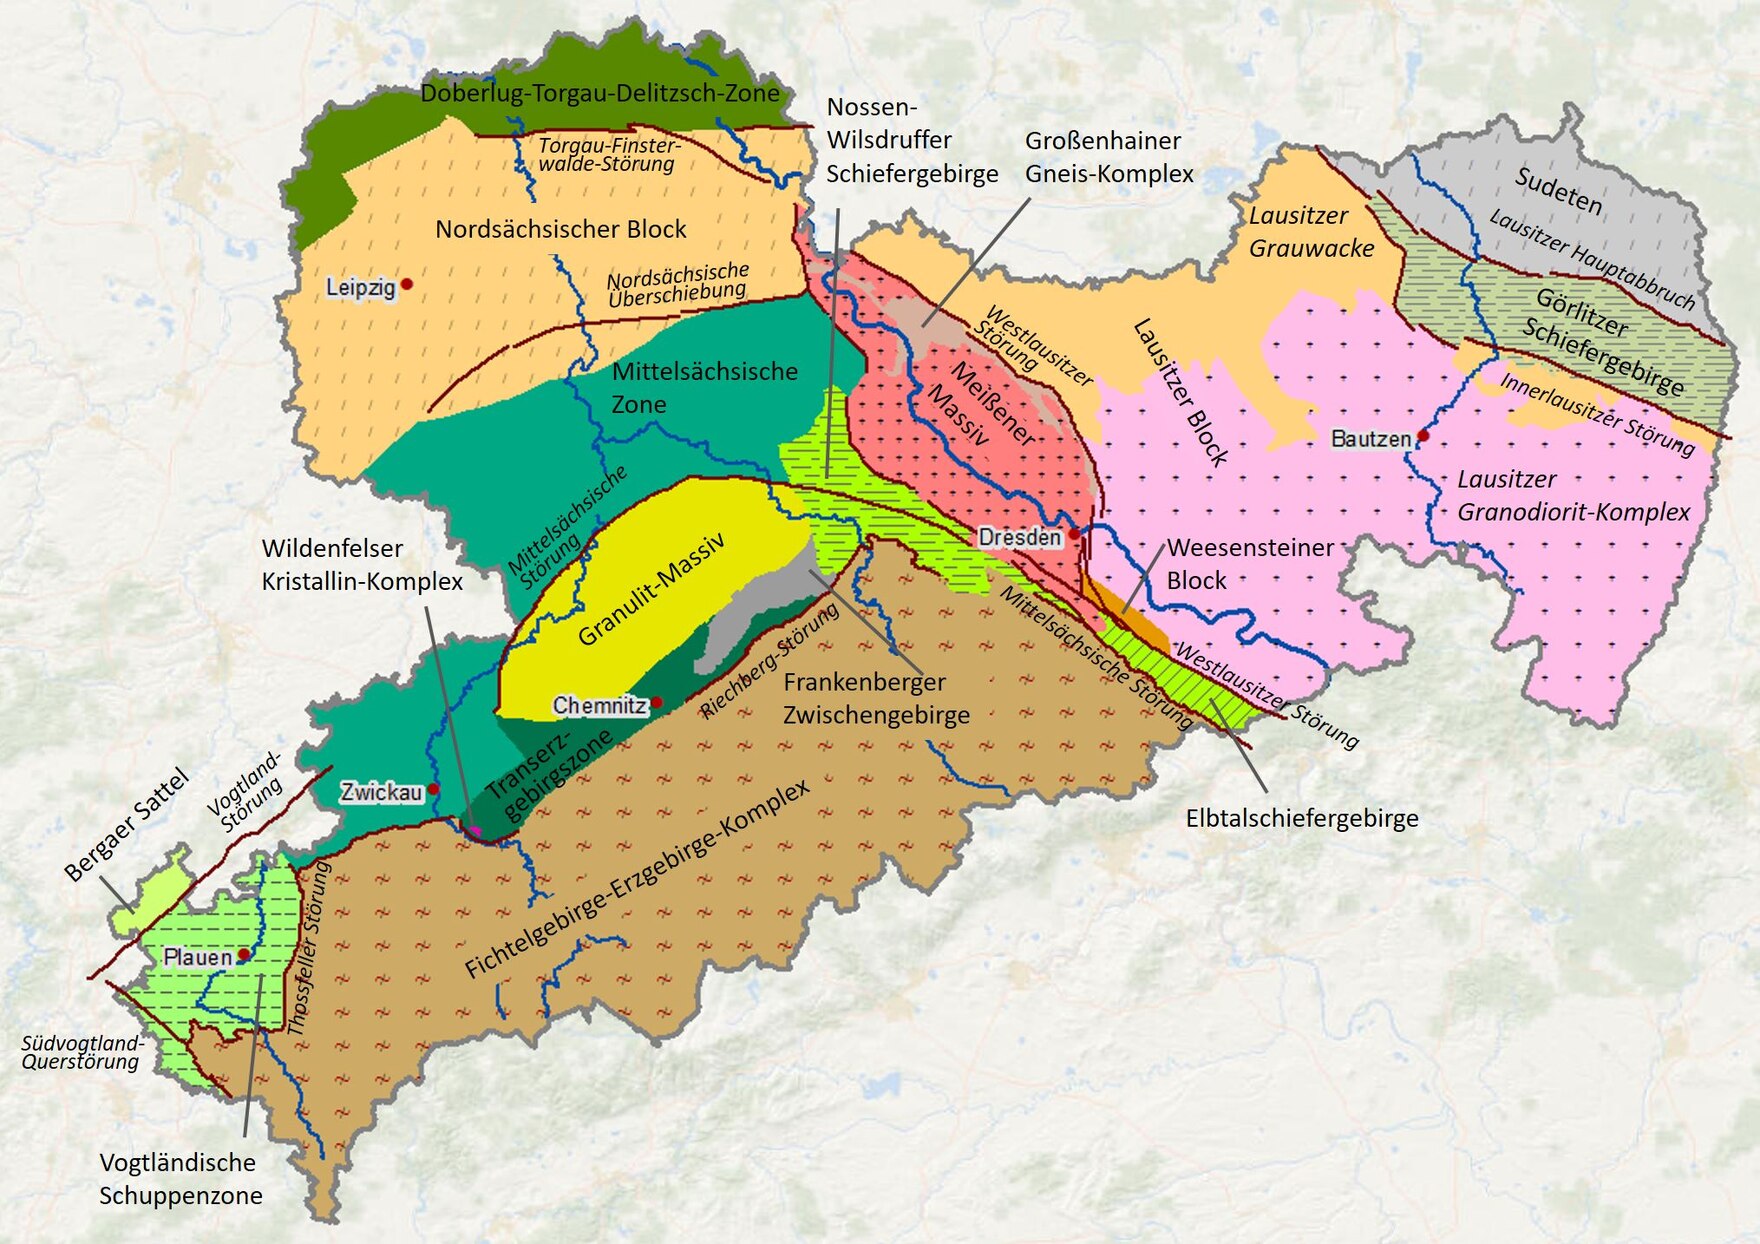 Karte mit den regionalen geologischen Einheiten des Grundgebirges in Sachsen.